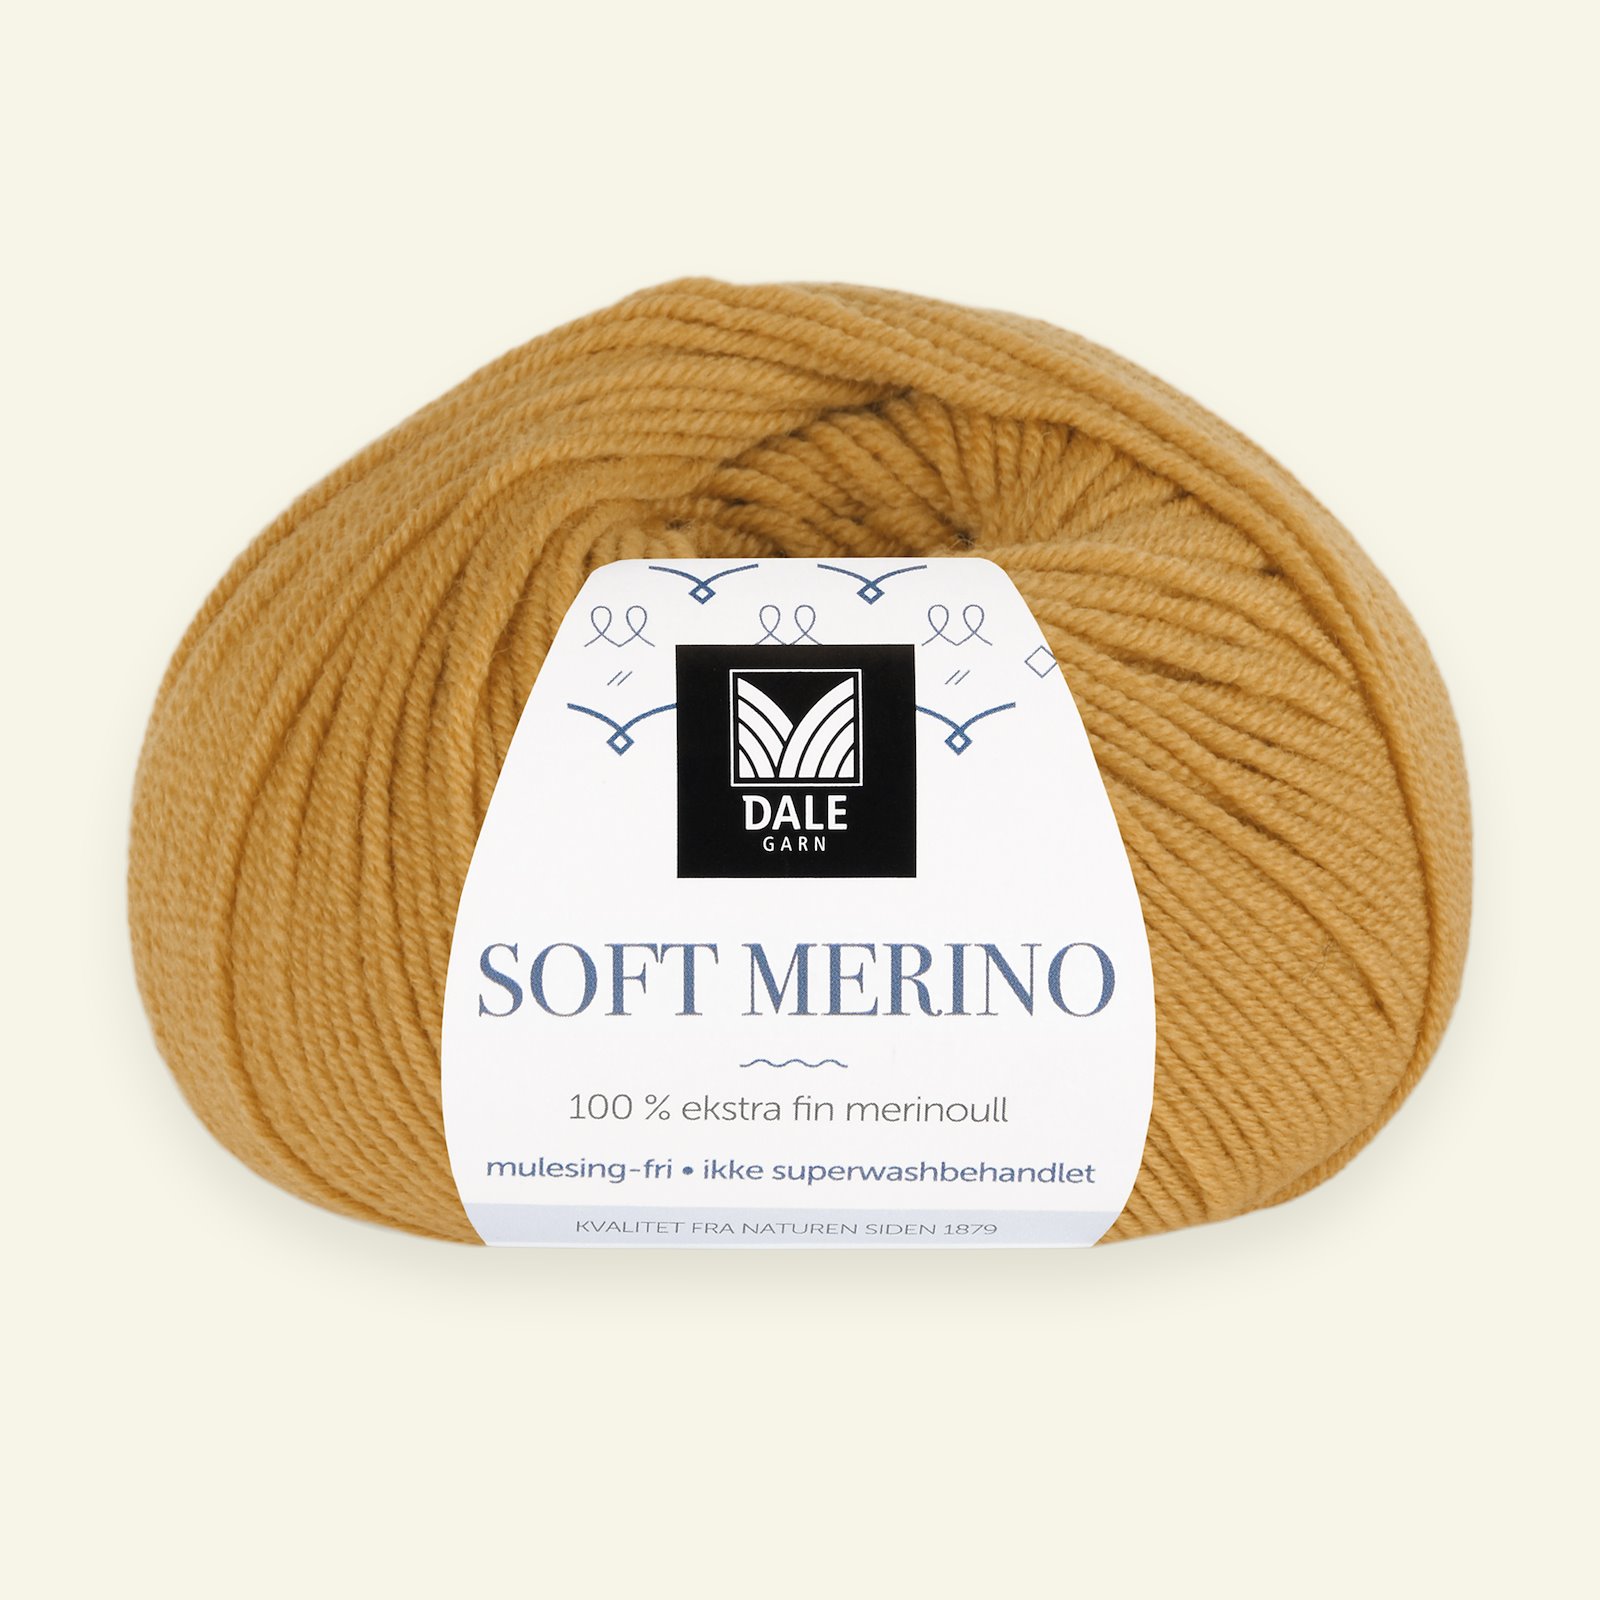 Dale Garn, 100% extra fine merino wool yarn, "Soft Merino", sweetcorn yellow (3008) 90000329_pack